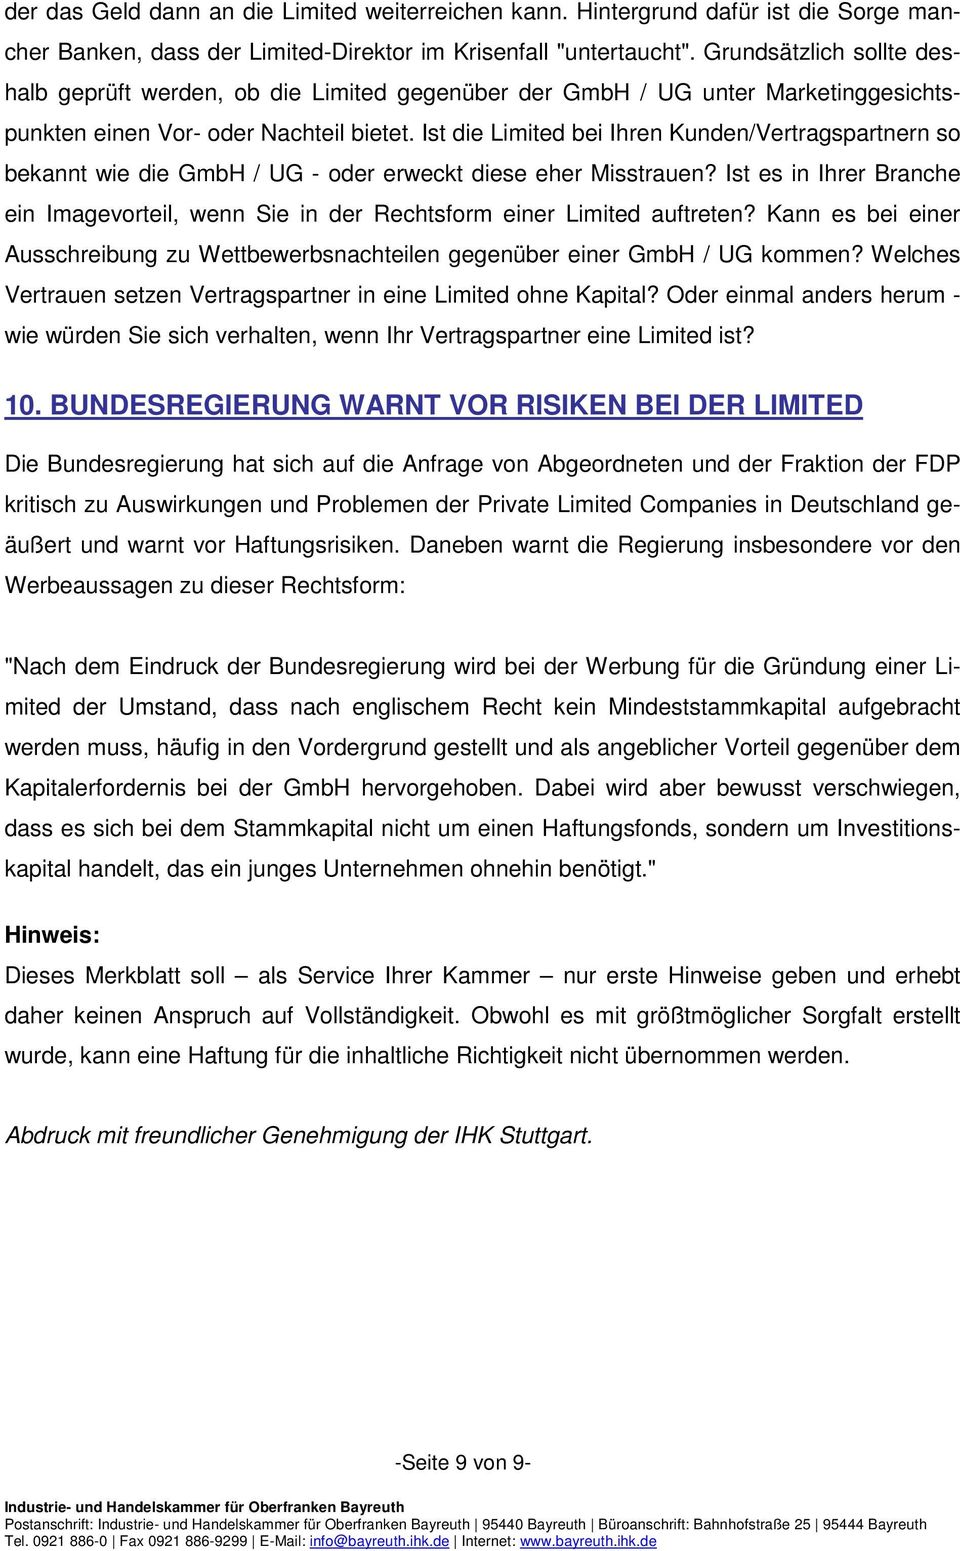 Ist die Limited bei Ihren Kunden/Vertragspartnern so bekannt wie die GmbH / UG - oder erweckt diese eher Misstrauen?